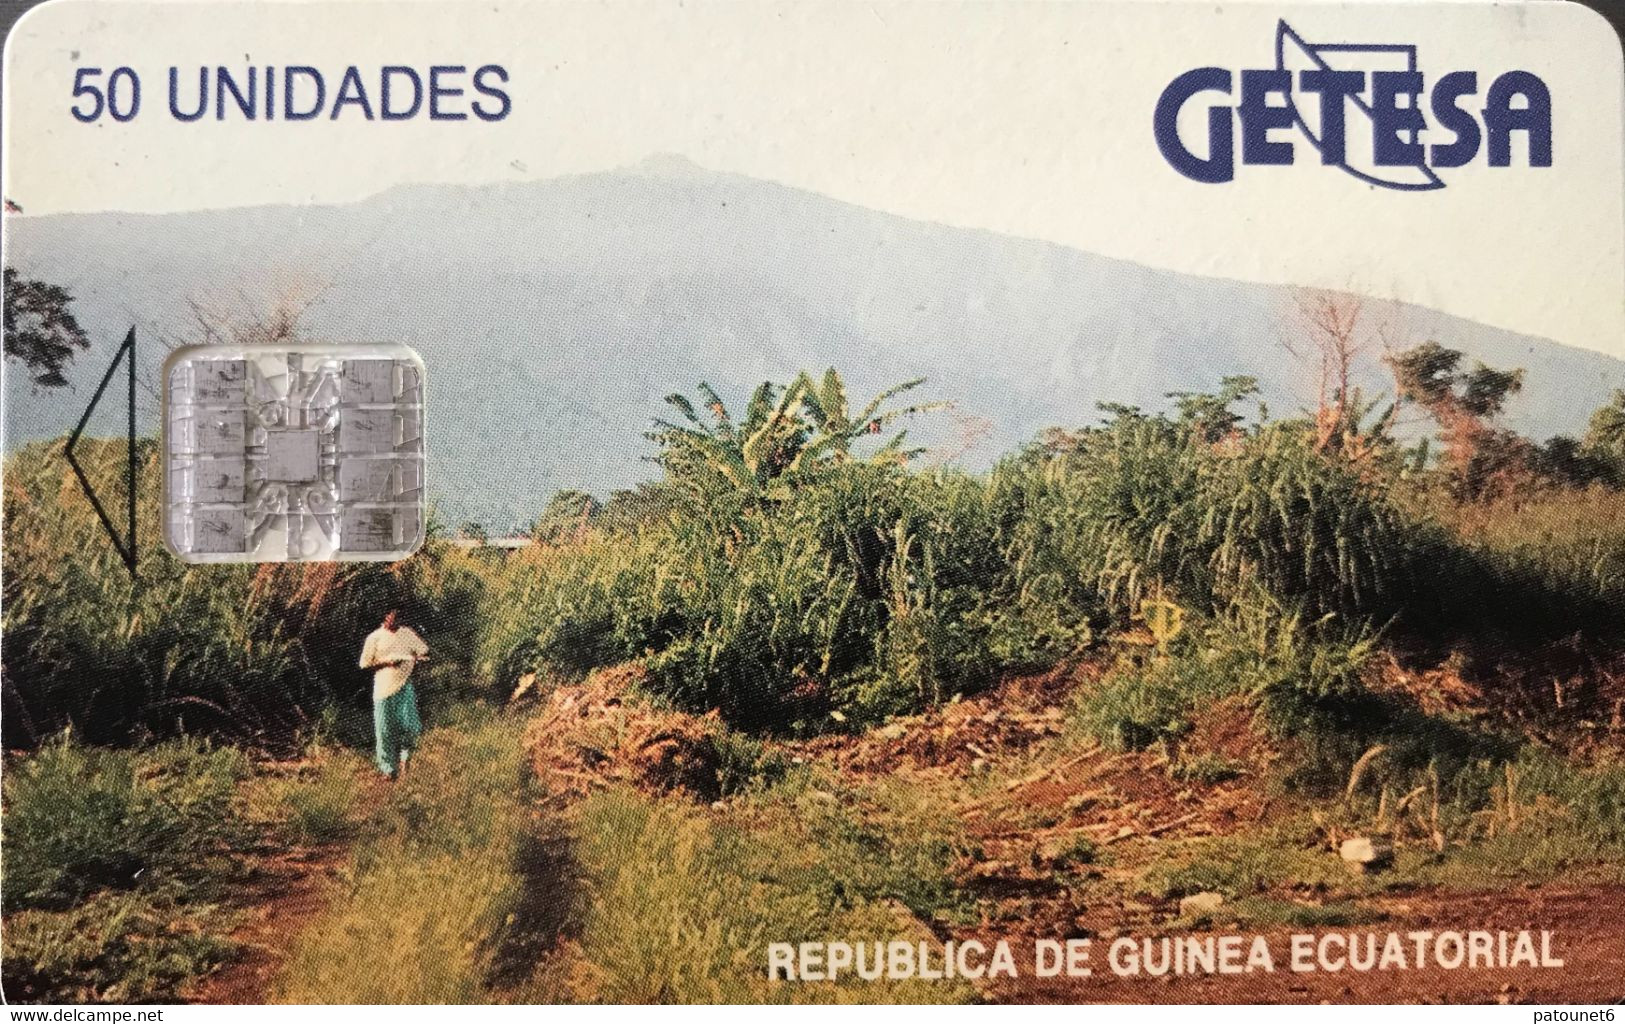 GUINEE-EQUATORIALE  -  Phonecard  -  GETESA - SC7 -  50 Unidades - Guinea Ecuatorial